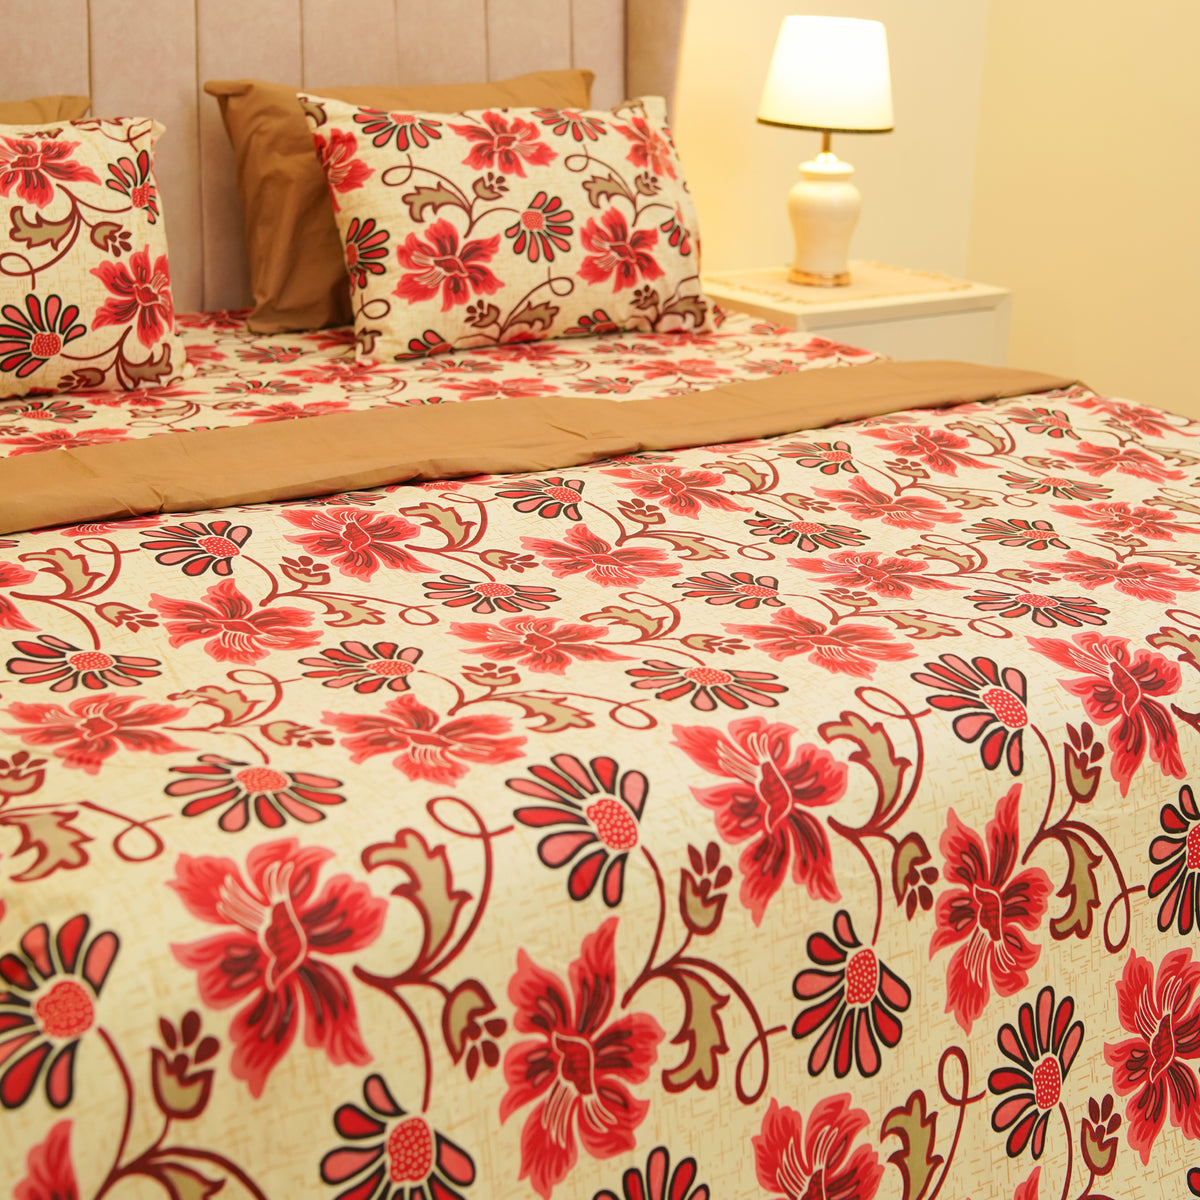 Red Rose King Duvet Cover & Comforter Set